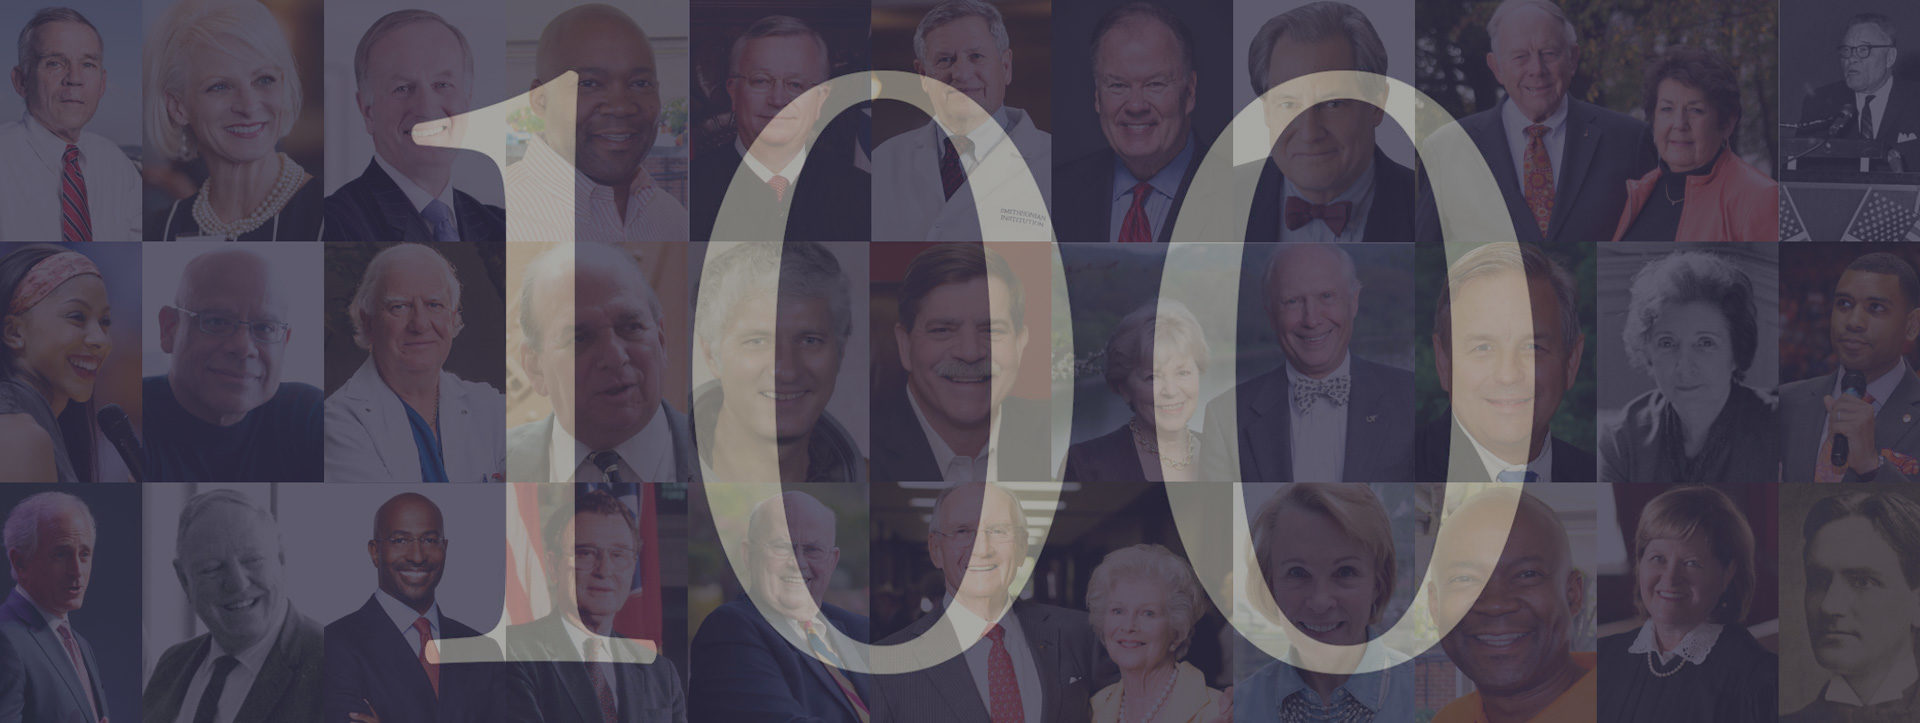 100 distinguished alumni